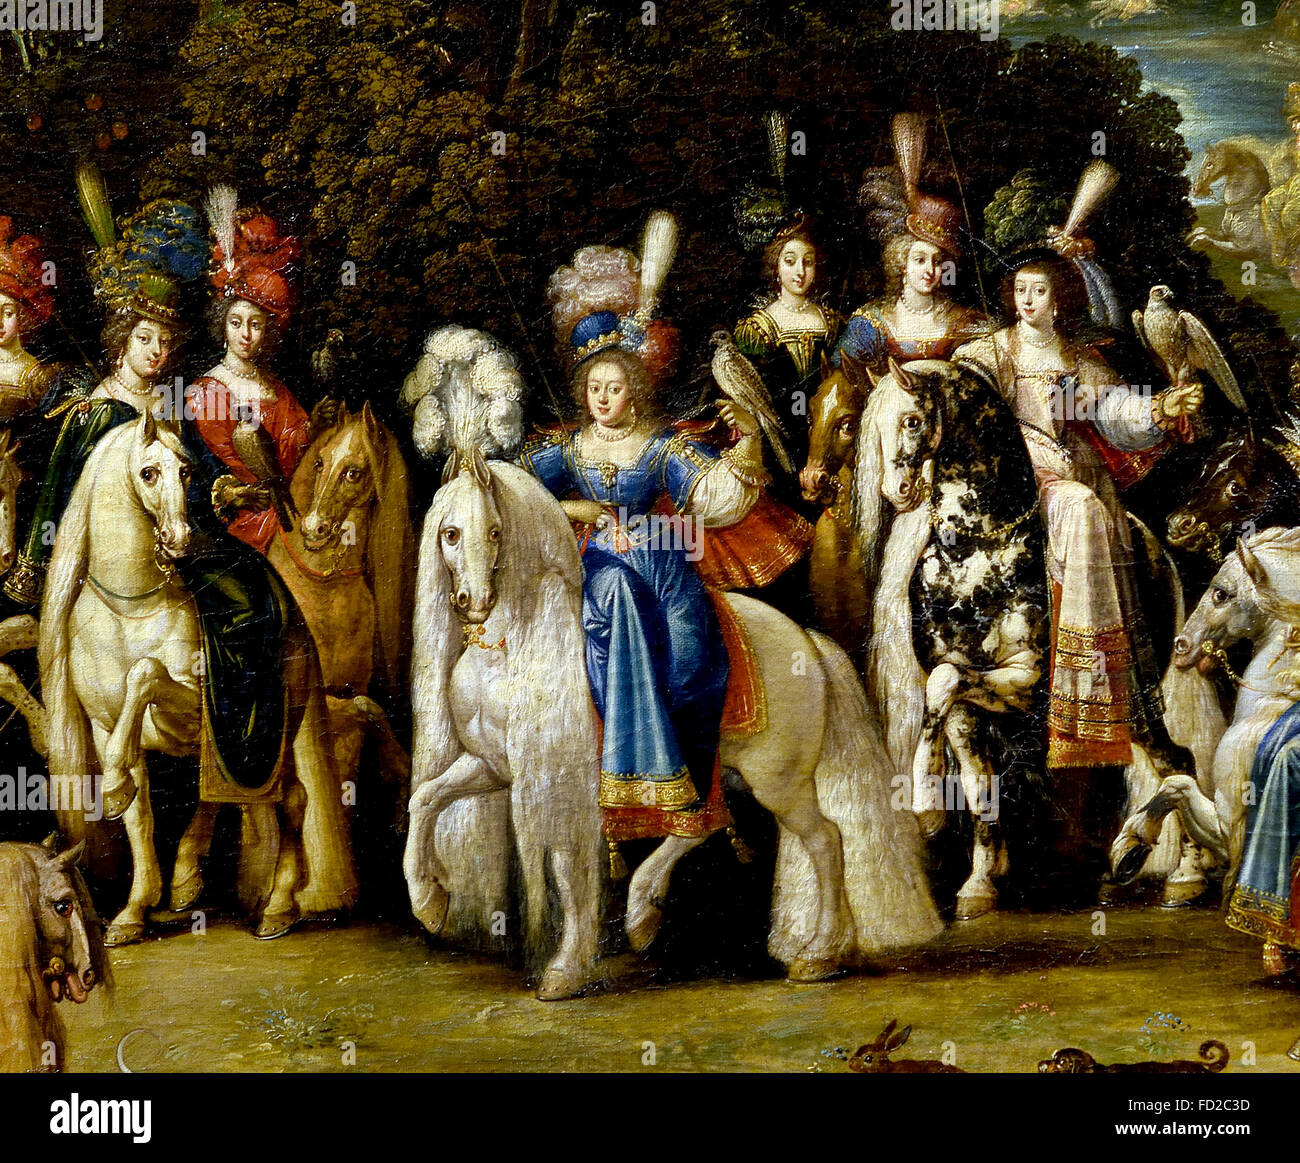 L'intention de décorer le bureau de la Reine Anne d'Autriche, Richelieu château Deruet 1588-1660 France Français française ( l'air (ou 'Autumn'). C'est le premier tableau de la série, acquis par Richelieu, les trois autres sont arrivés plus tard. Il représente la Duchesse de Lorraine accompagnée de mesdames cour lors d'un faucon de chasse. C'est le seul qui n'est pas consacrée à la gloire de la famille royale. ) Banque D'Images